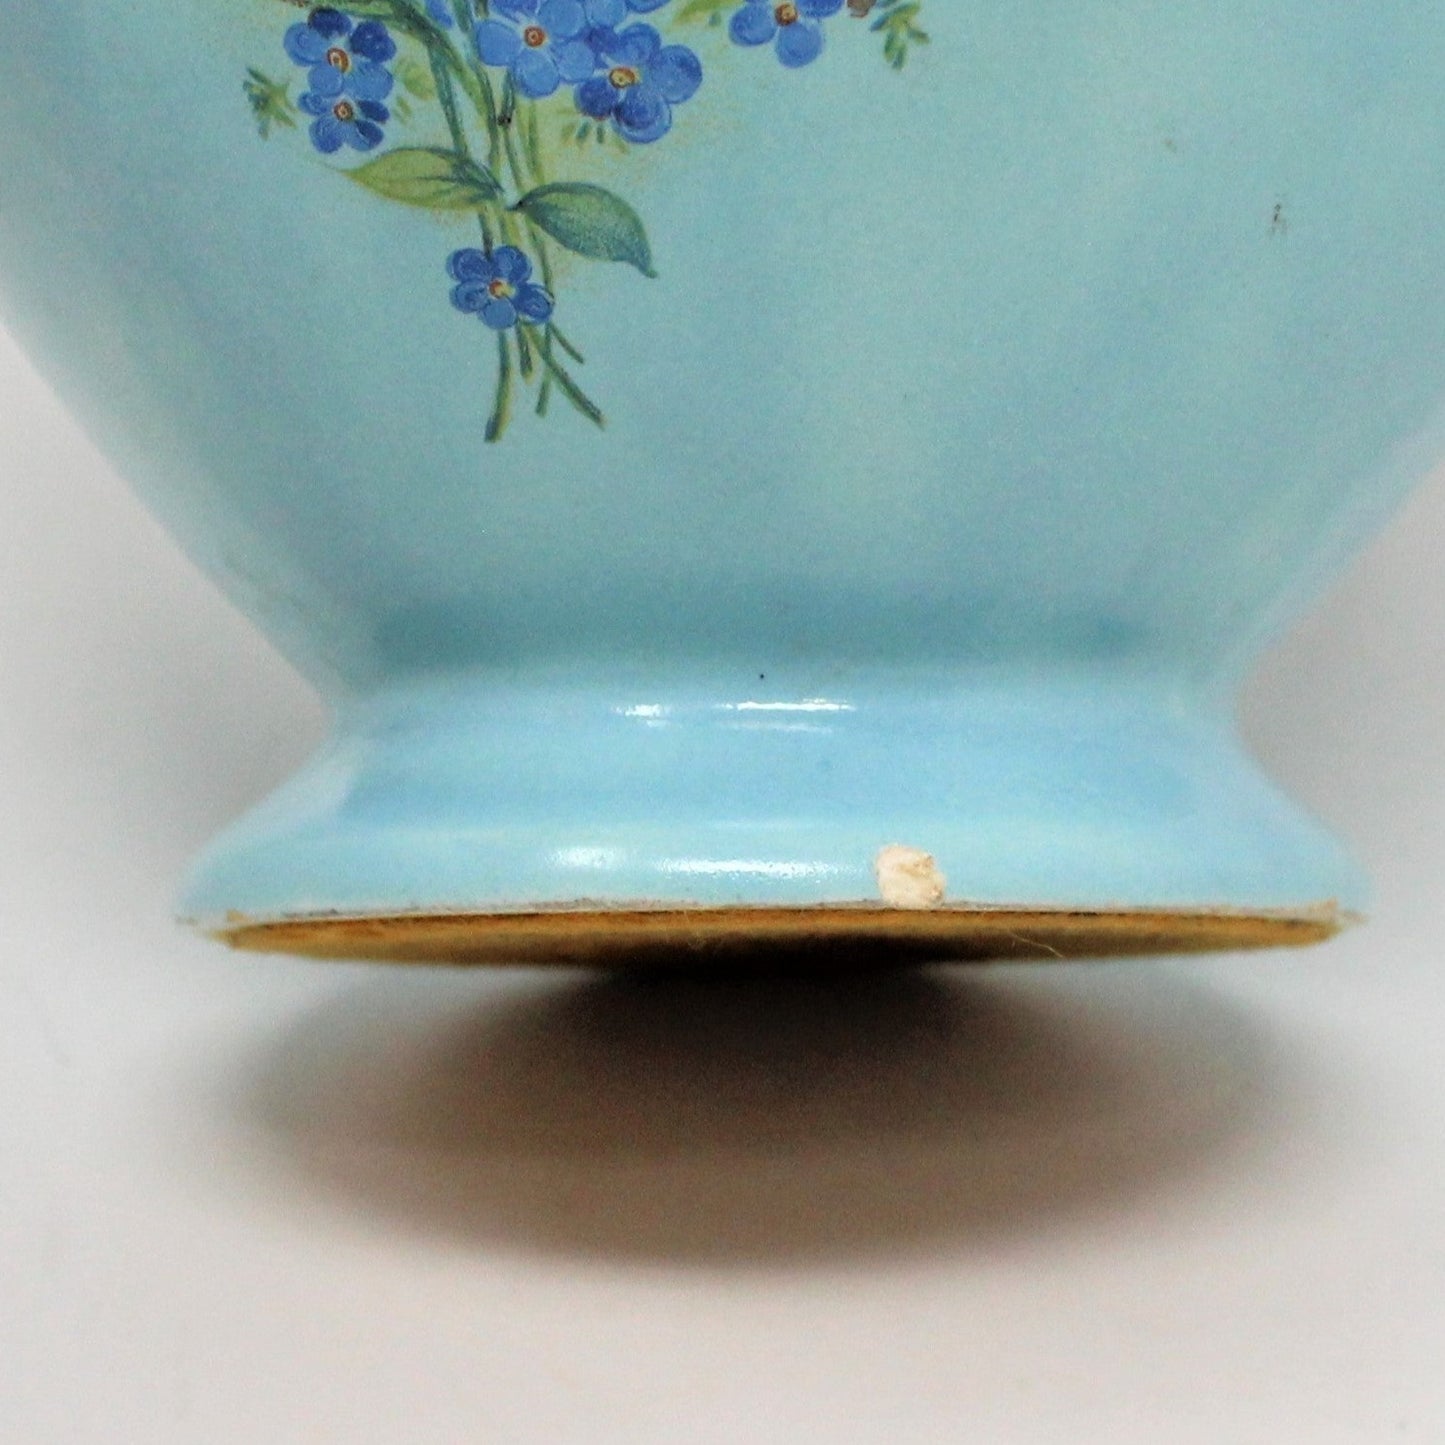 Pitcher, Floral Forget Me Not Decal on Robins Egg Blue Ceramic, Vintage